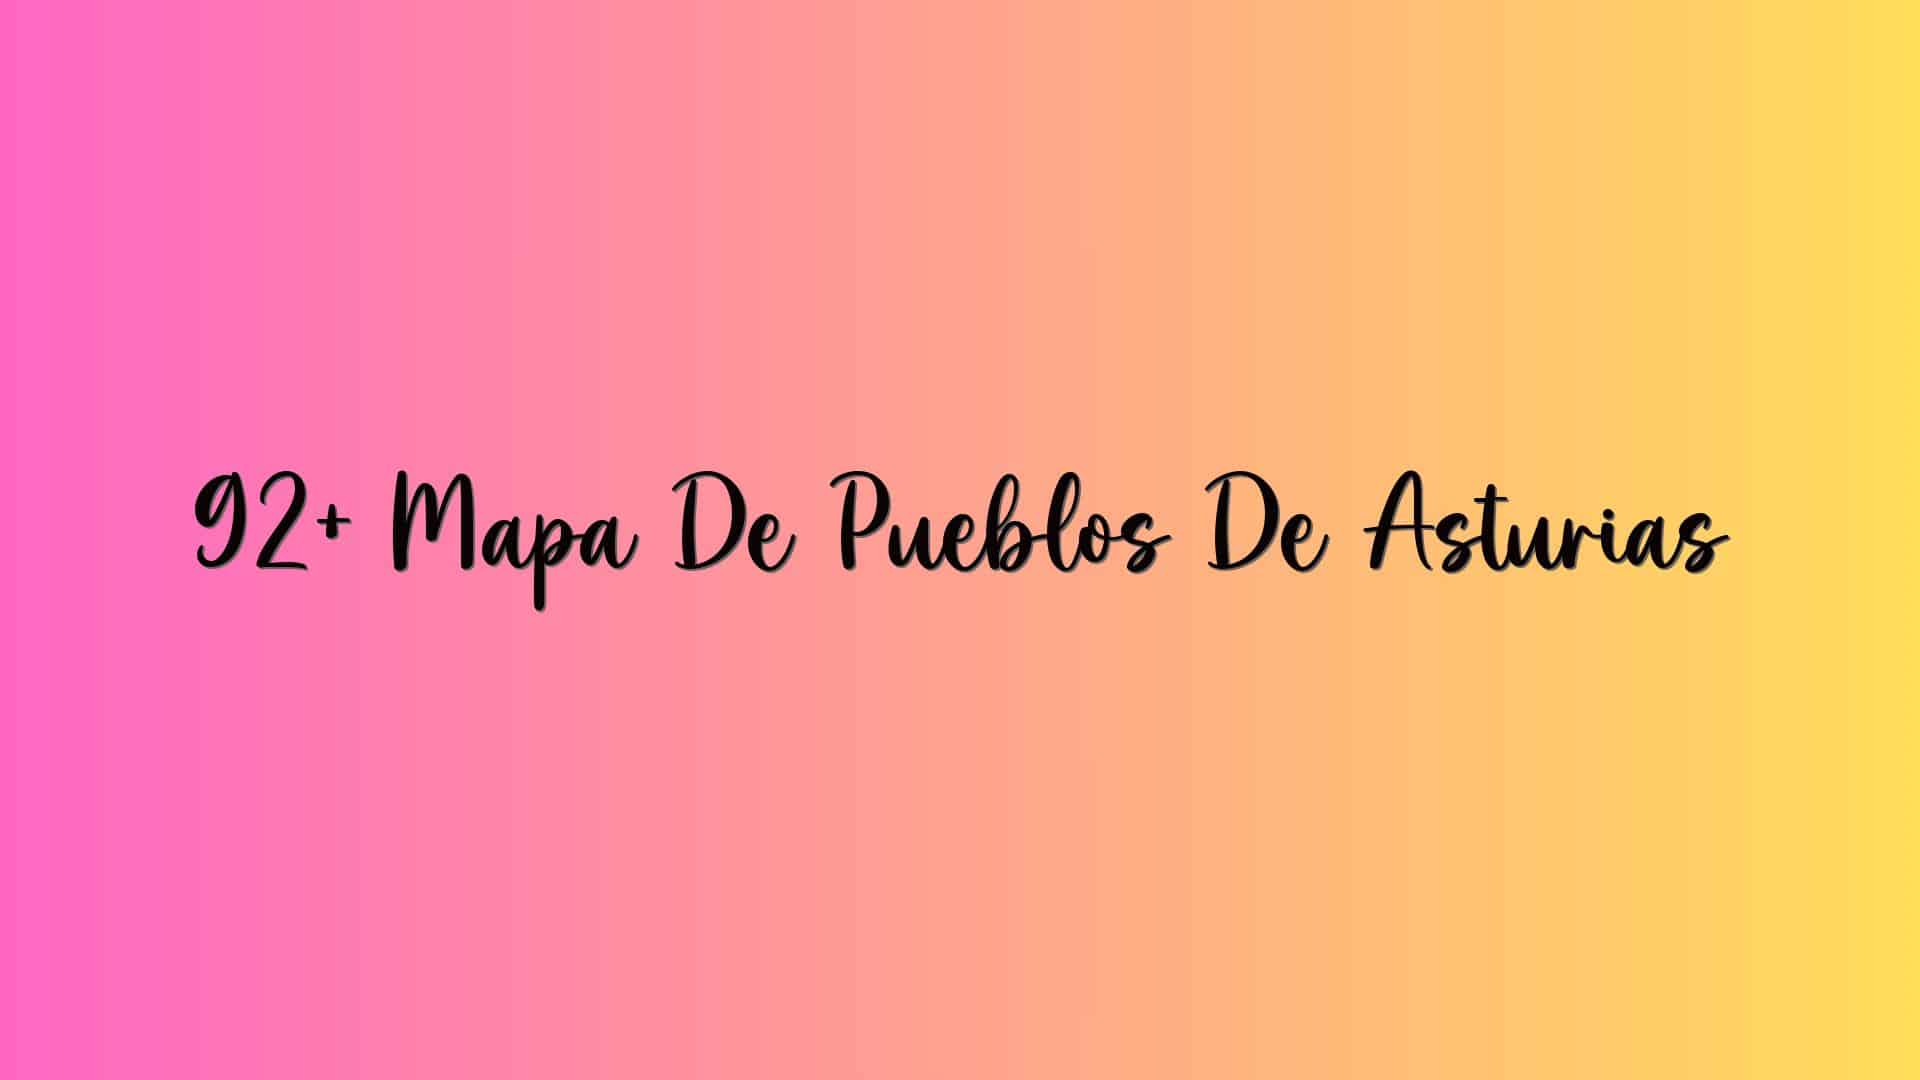 92+ Mapa De Pueblos De Asturias